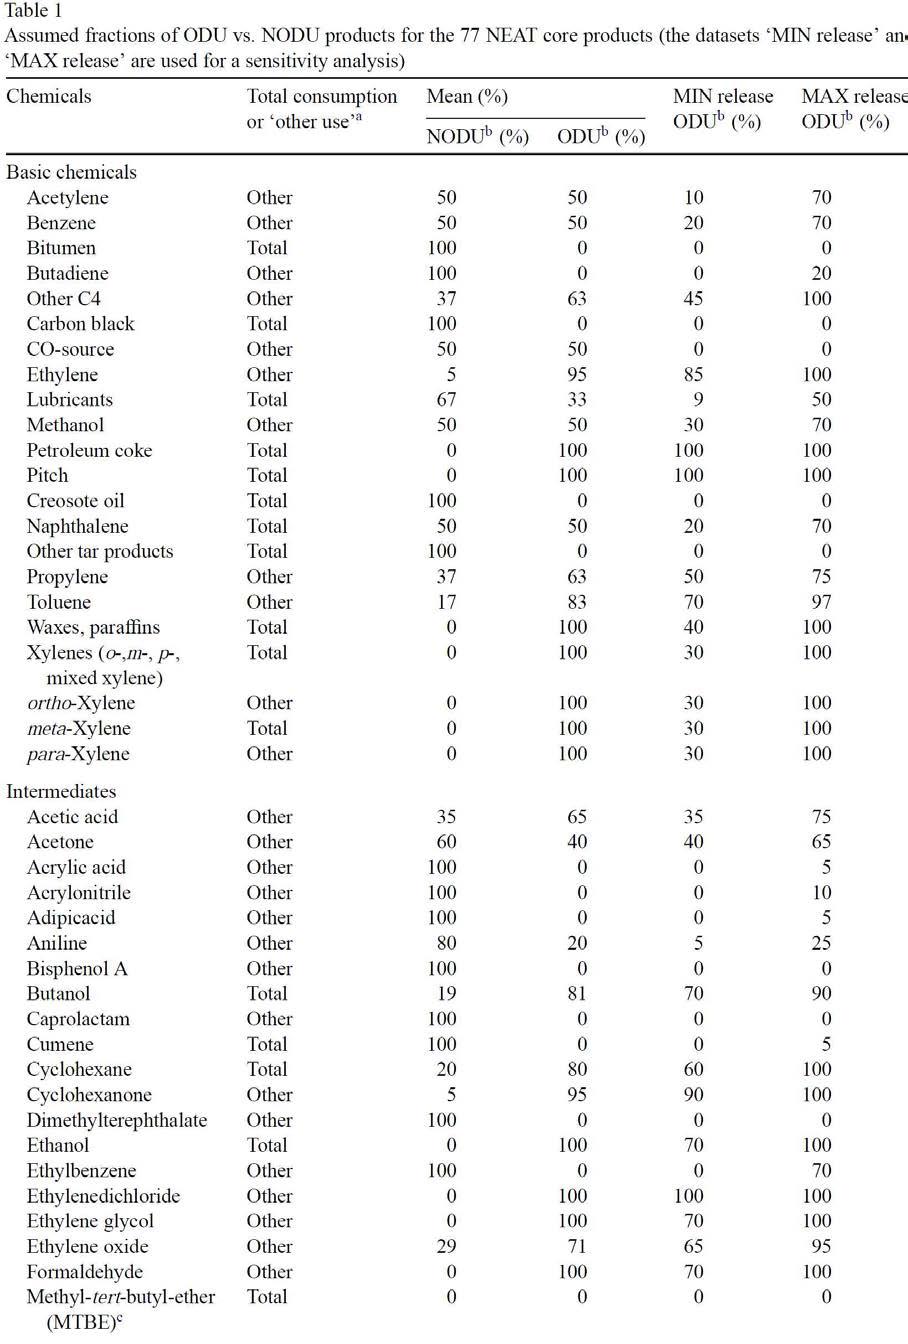 77개 석유화학 제품의 사용형태에 따른 ODU/NODU 비율 구분